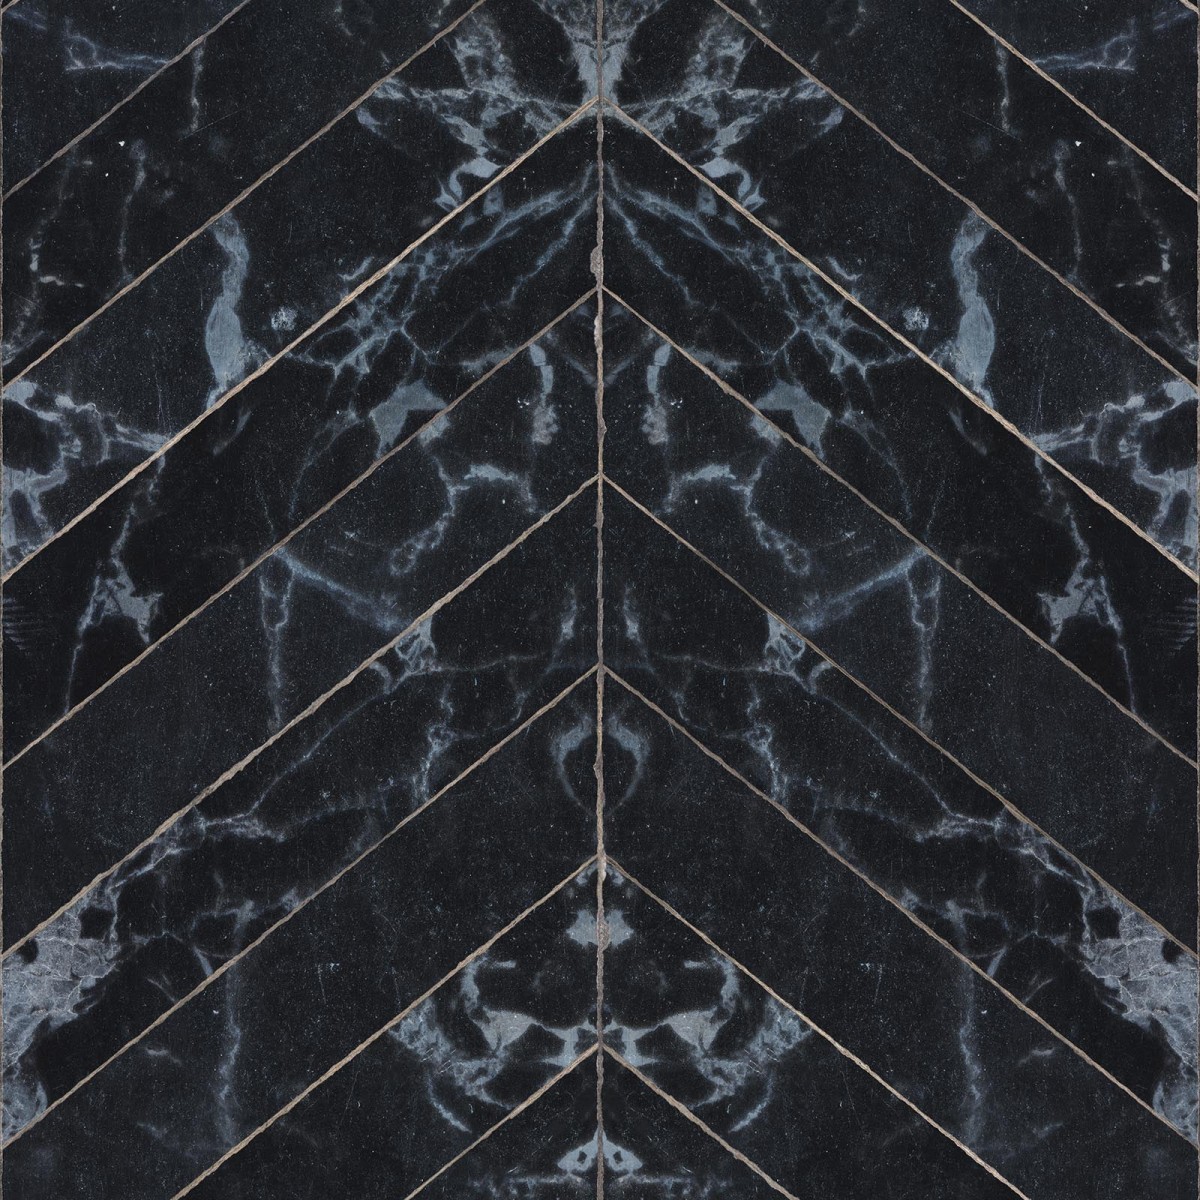 Tapet designer Materials Marble, Herring Bone, Black by Piet Hein Eek, NLXL, 4.9mp / rola, Tapet Exclusivist 